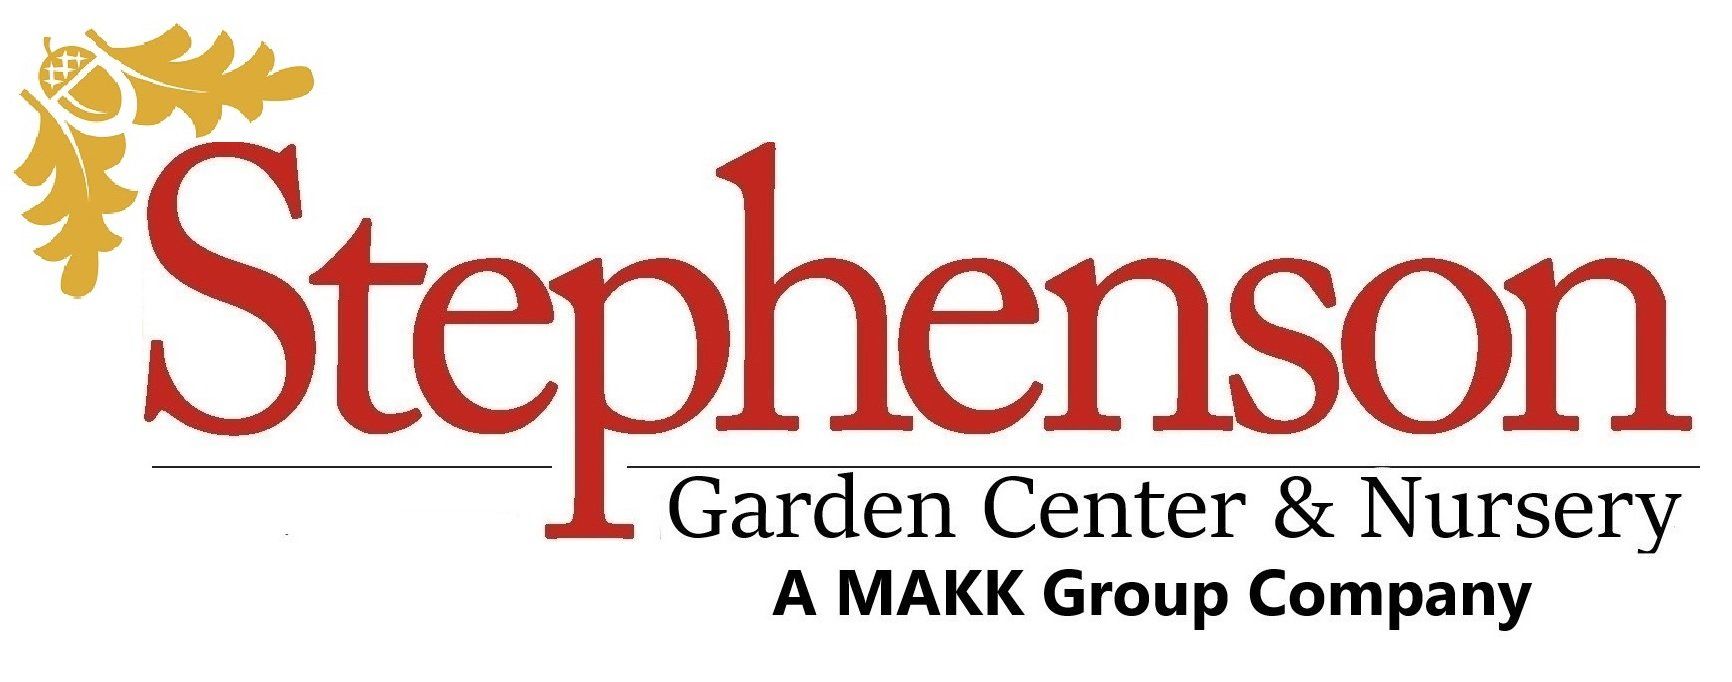 Makk Landscape Group & Design Logo